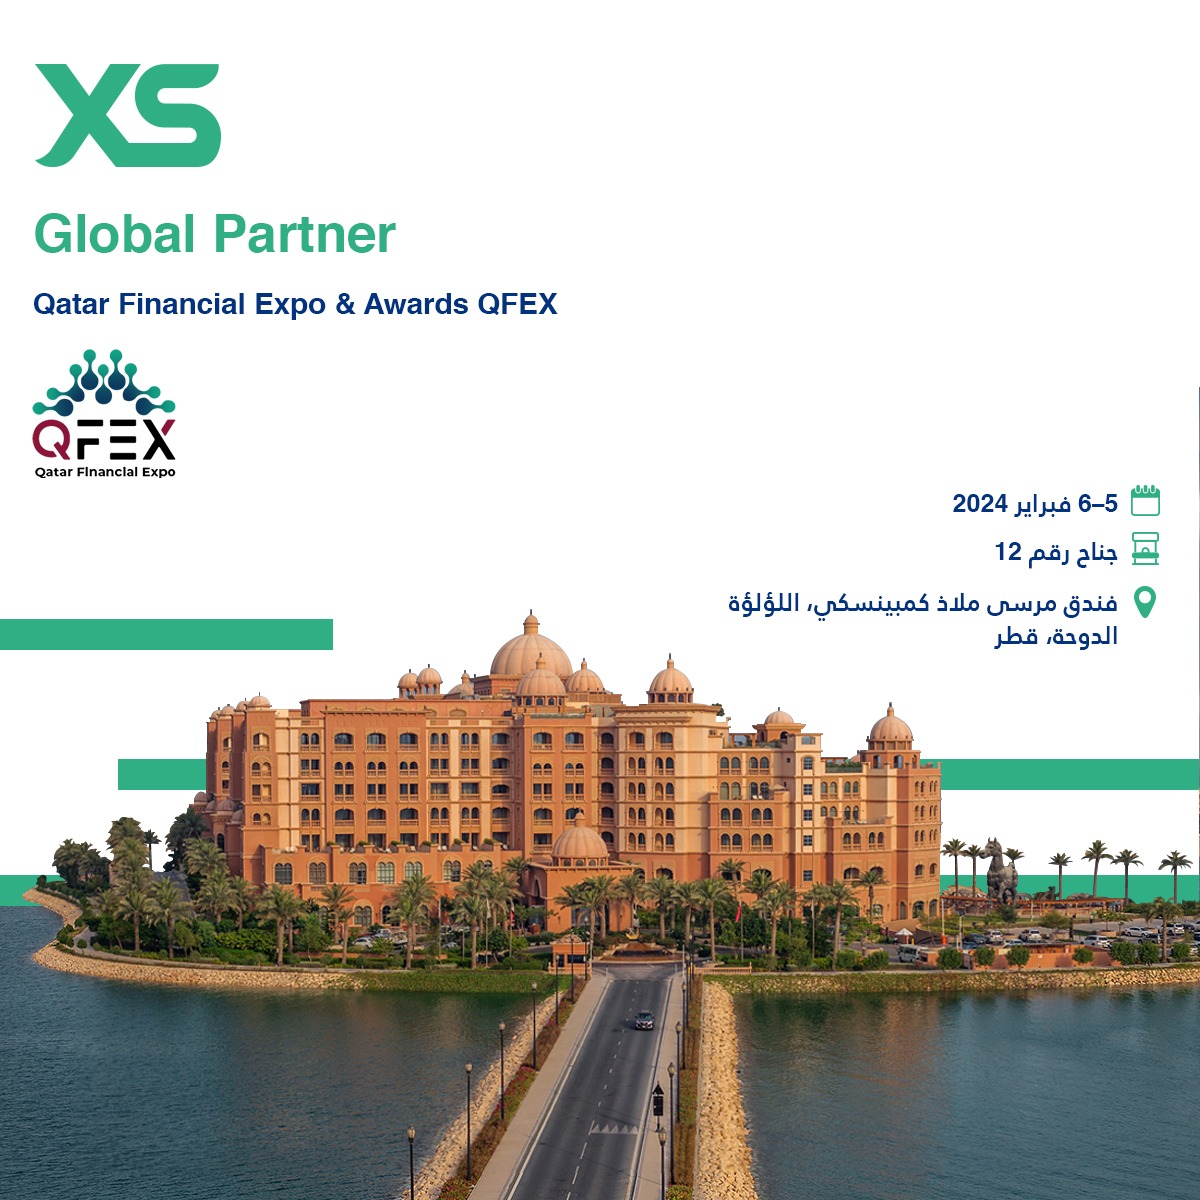 إكس أس تعزز تواجدها في المنطقة العربية وتصبح الشريك العالمي لمعرض قطر المالي